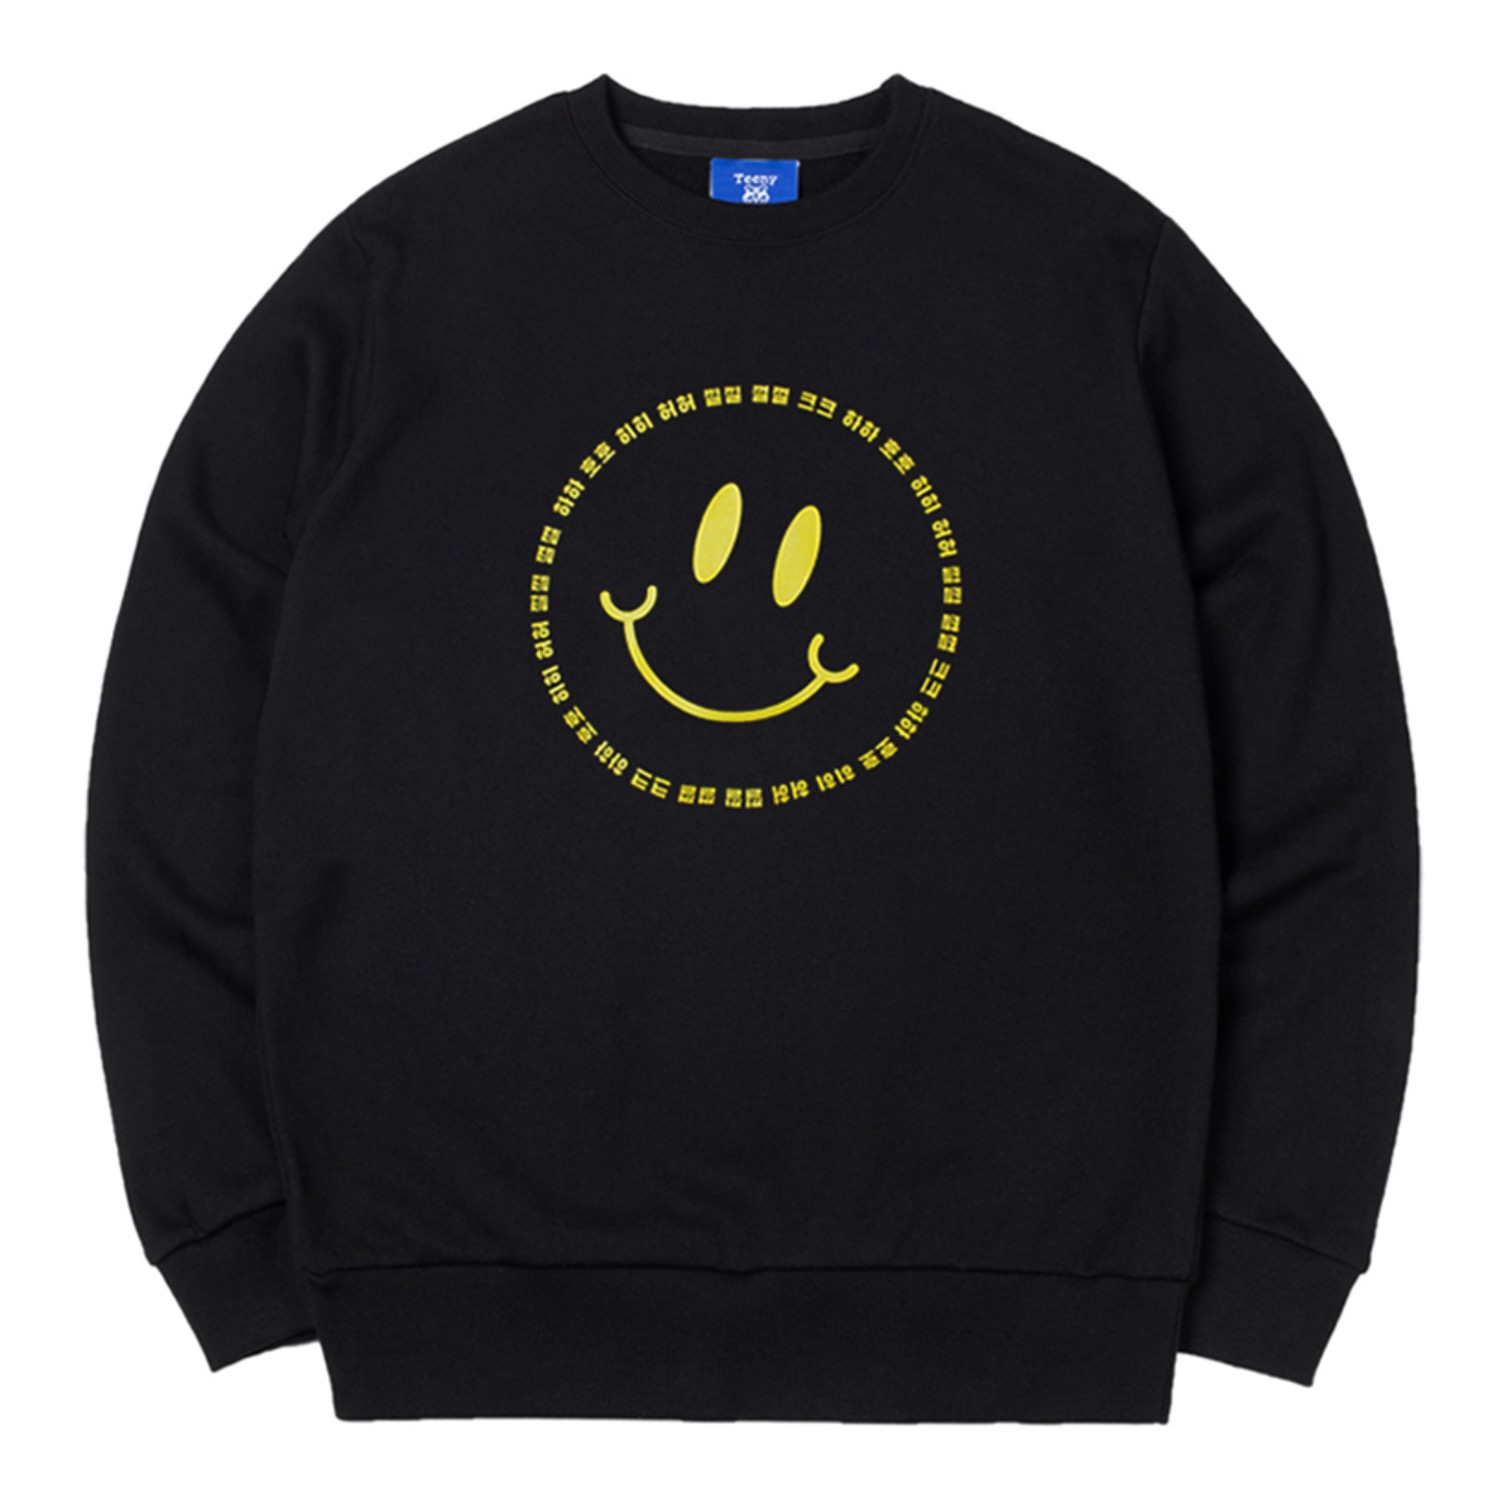 스마일 맨투맨 블랙 Smile sweatshirt (Black)